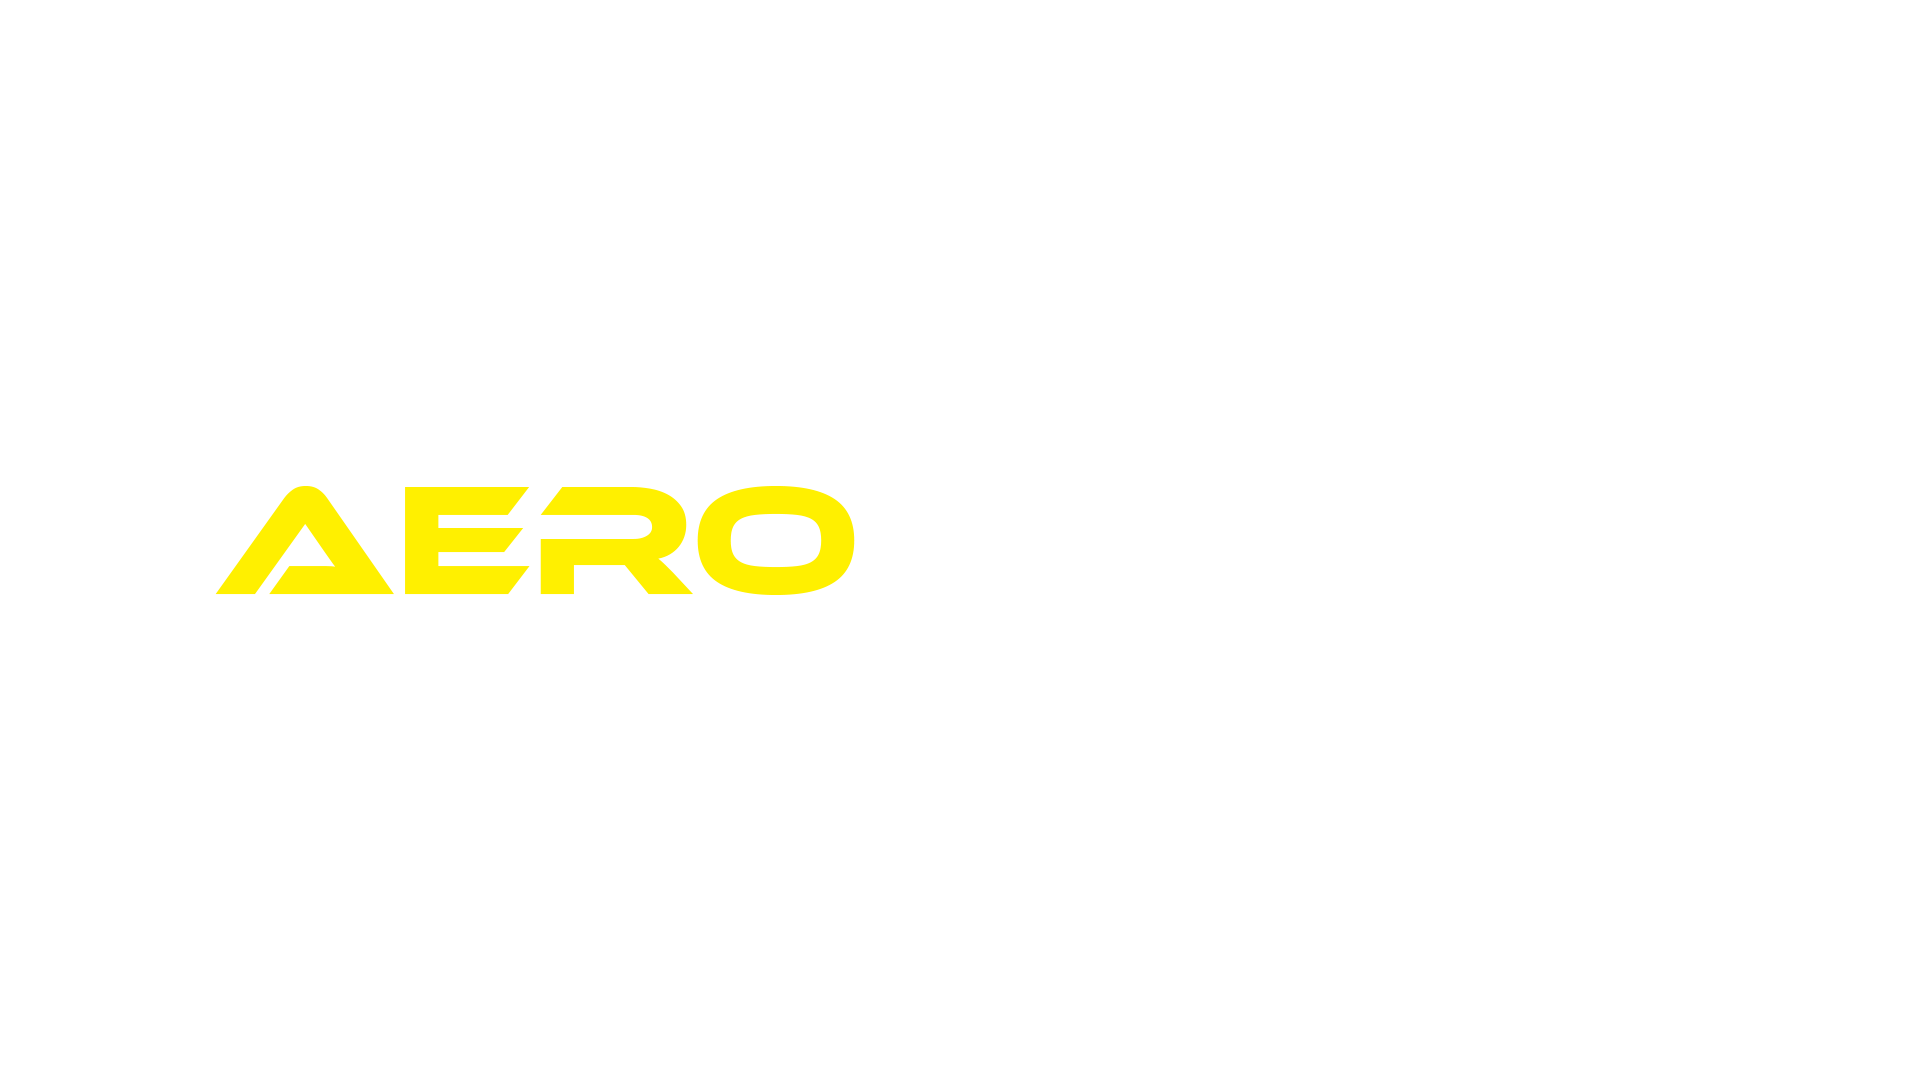 Aerokinetix-tran.png